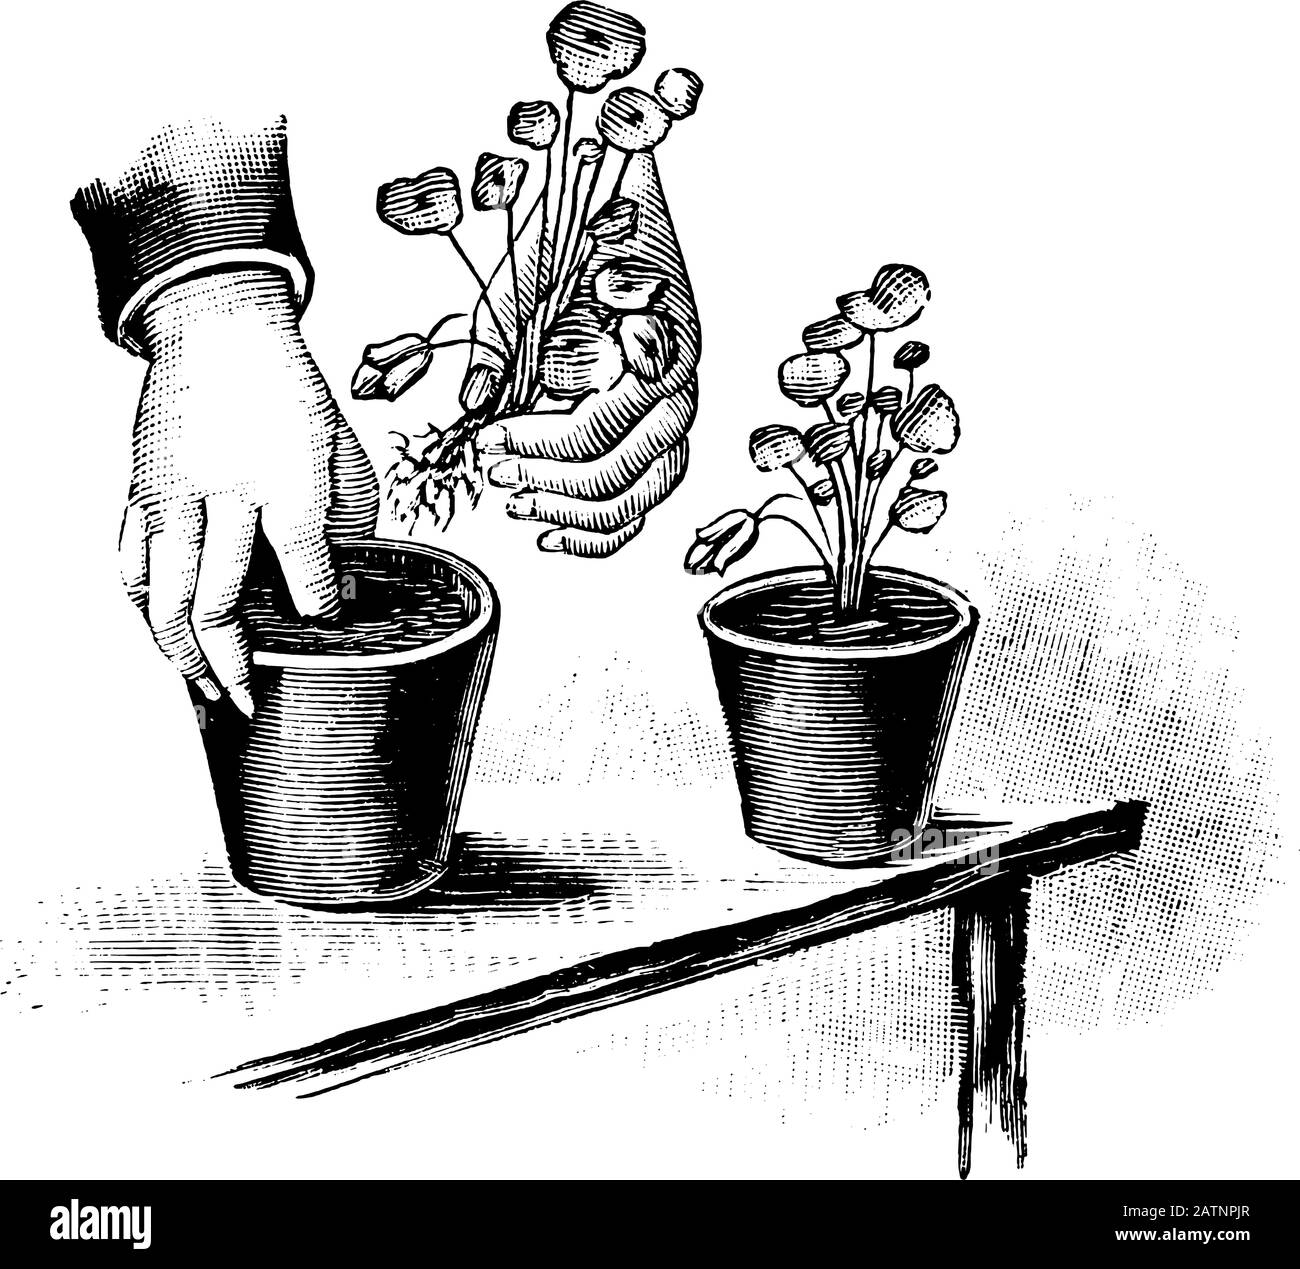 Antica linea d'arte vintage illustrazione, incisione o disegno della piantatura di piantine coltivate in vaso di fiori . Da prenotare Piante in camera, Praga, 1898. Illustrazione Vettoriale